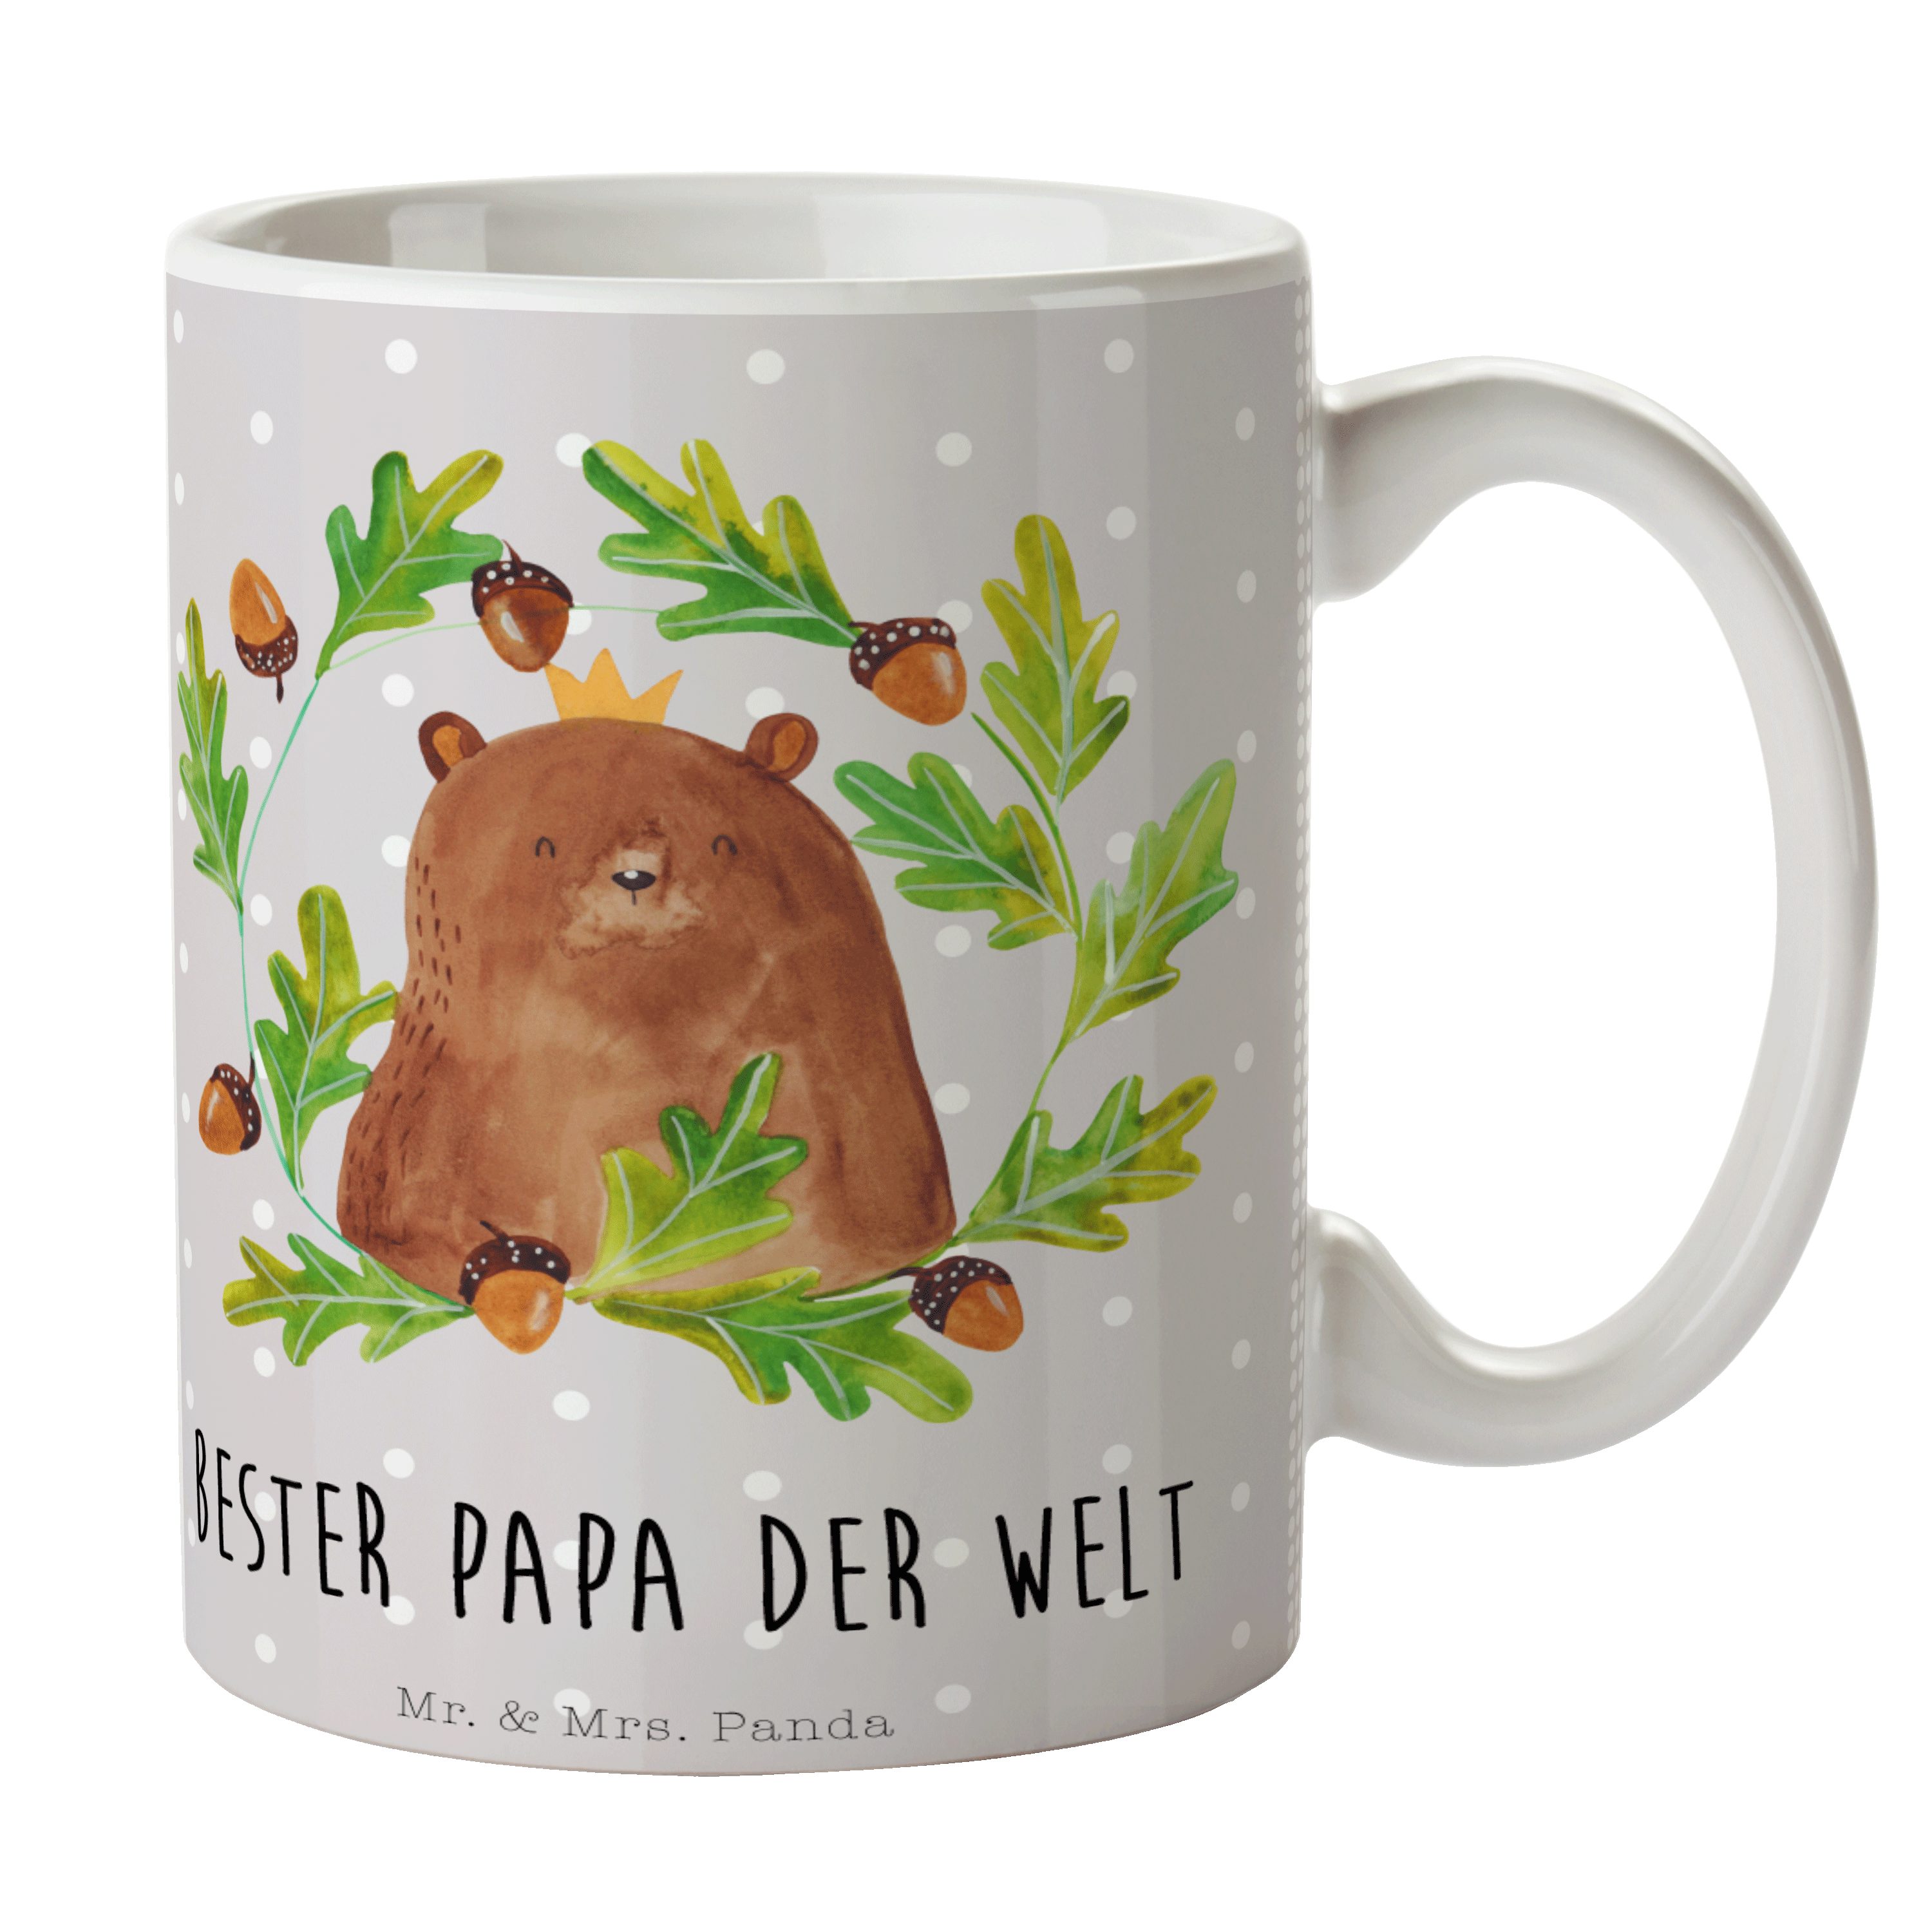 Mr. & Mrs. Panda Tasse Bär König - Grau Pastell - Geschenk, Teddybär, Kaffeetasse, bester Pa, Keramik